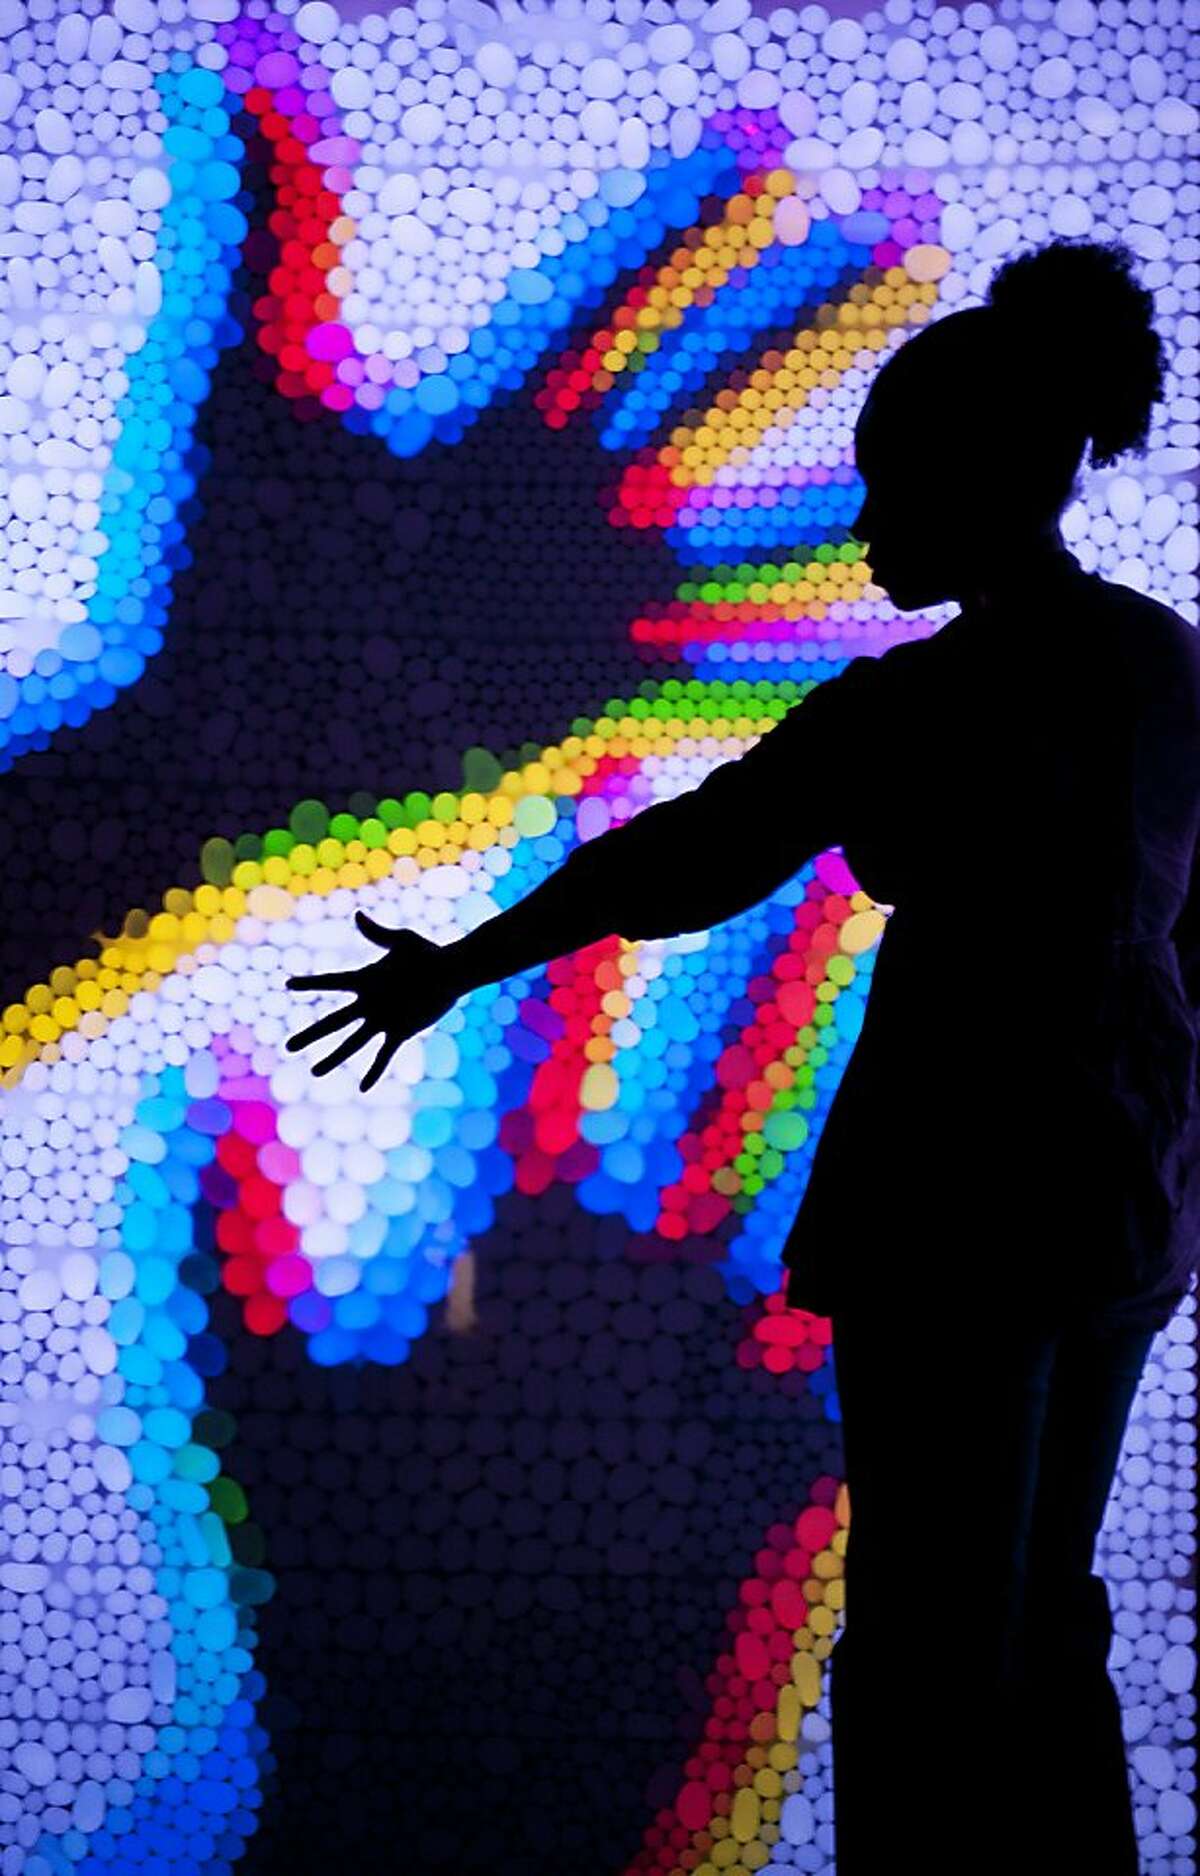 Mirrored pixels, part of the Exploratorium's "ColorFest" summer 2011.